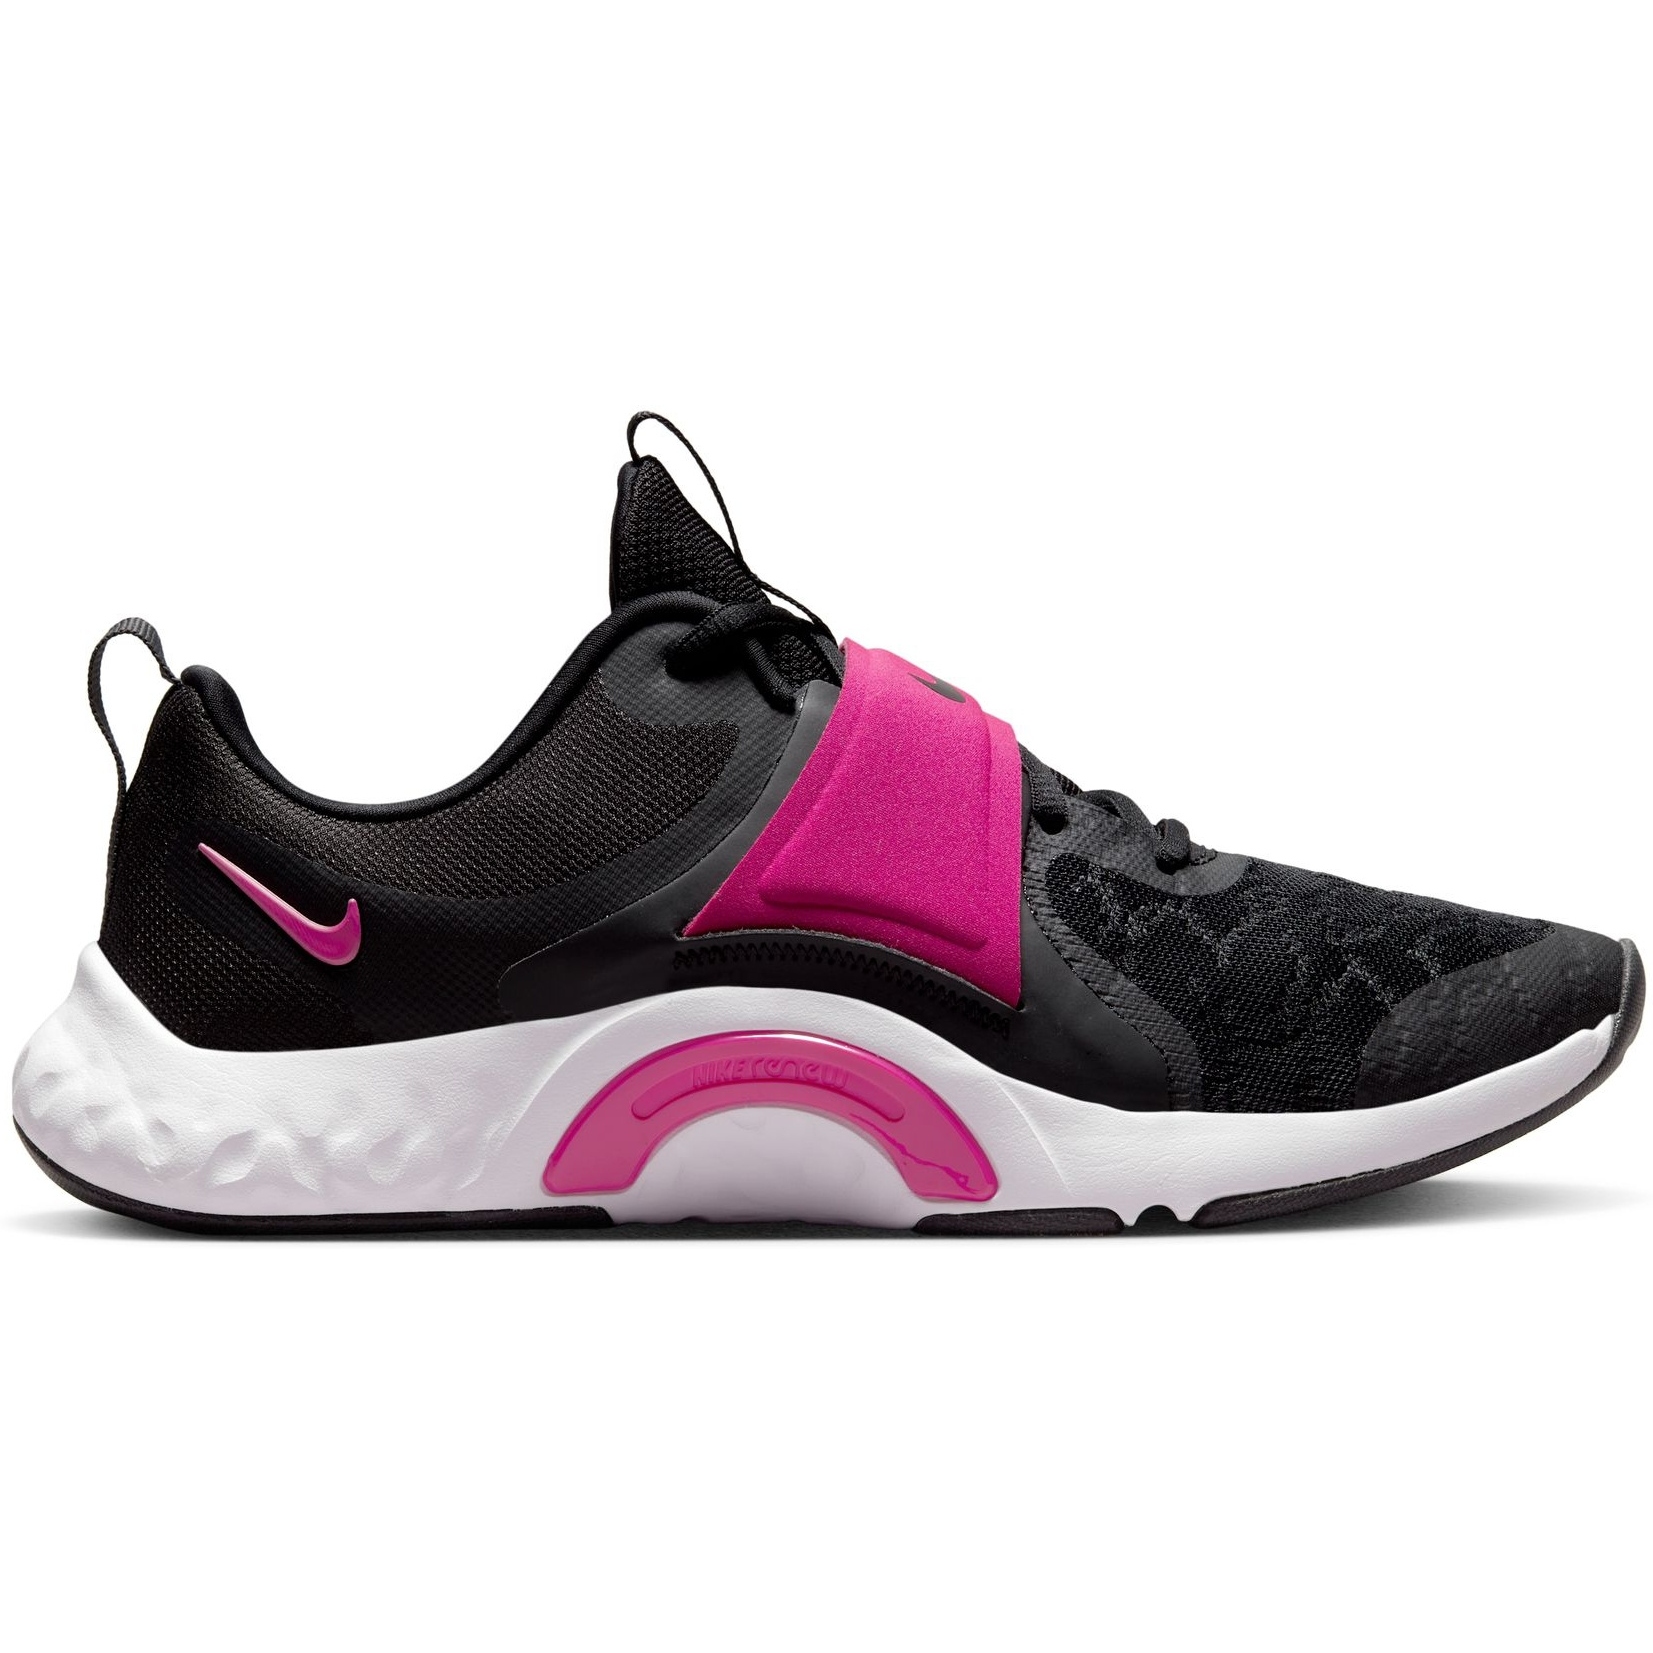 Produktbild von Nike Renew In-Season TR 12 Fitnessschuhe Damen - black/active pink-dark smoke grey-white DD9301-003